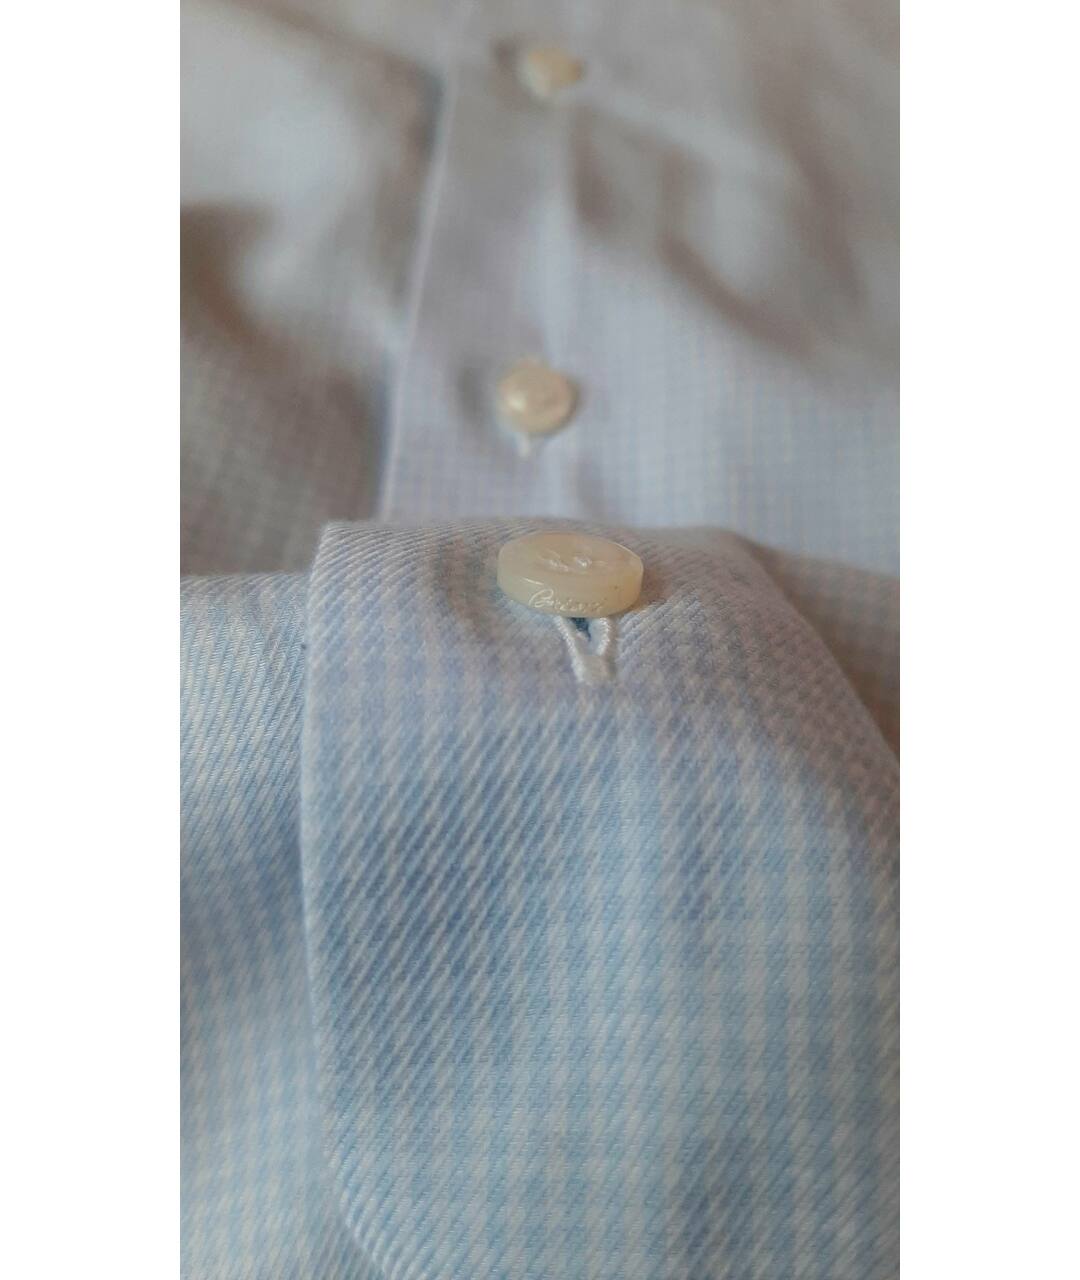 BRIONI Голубая хлопковая классическая рубашка, фото 4